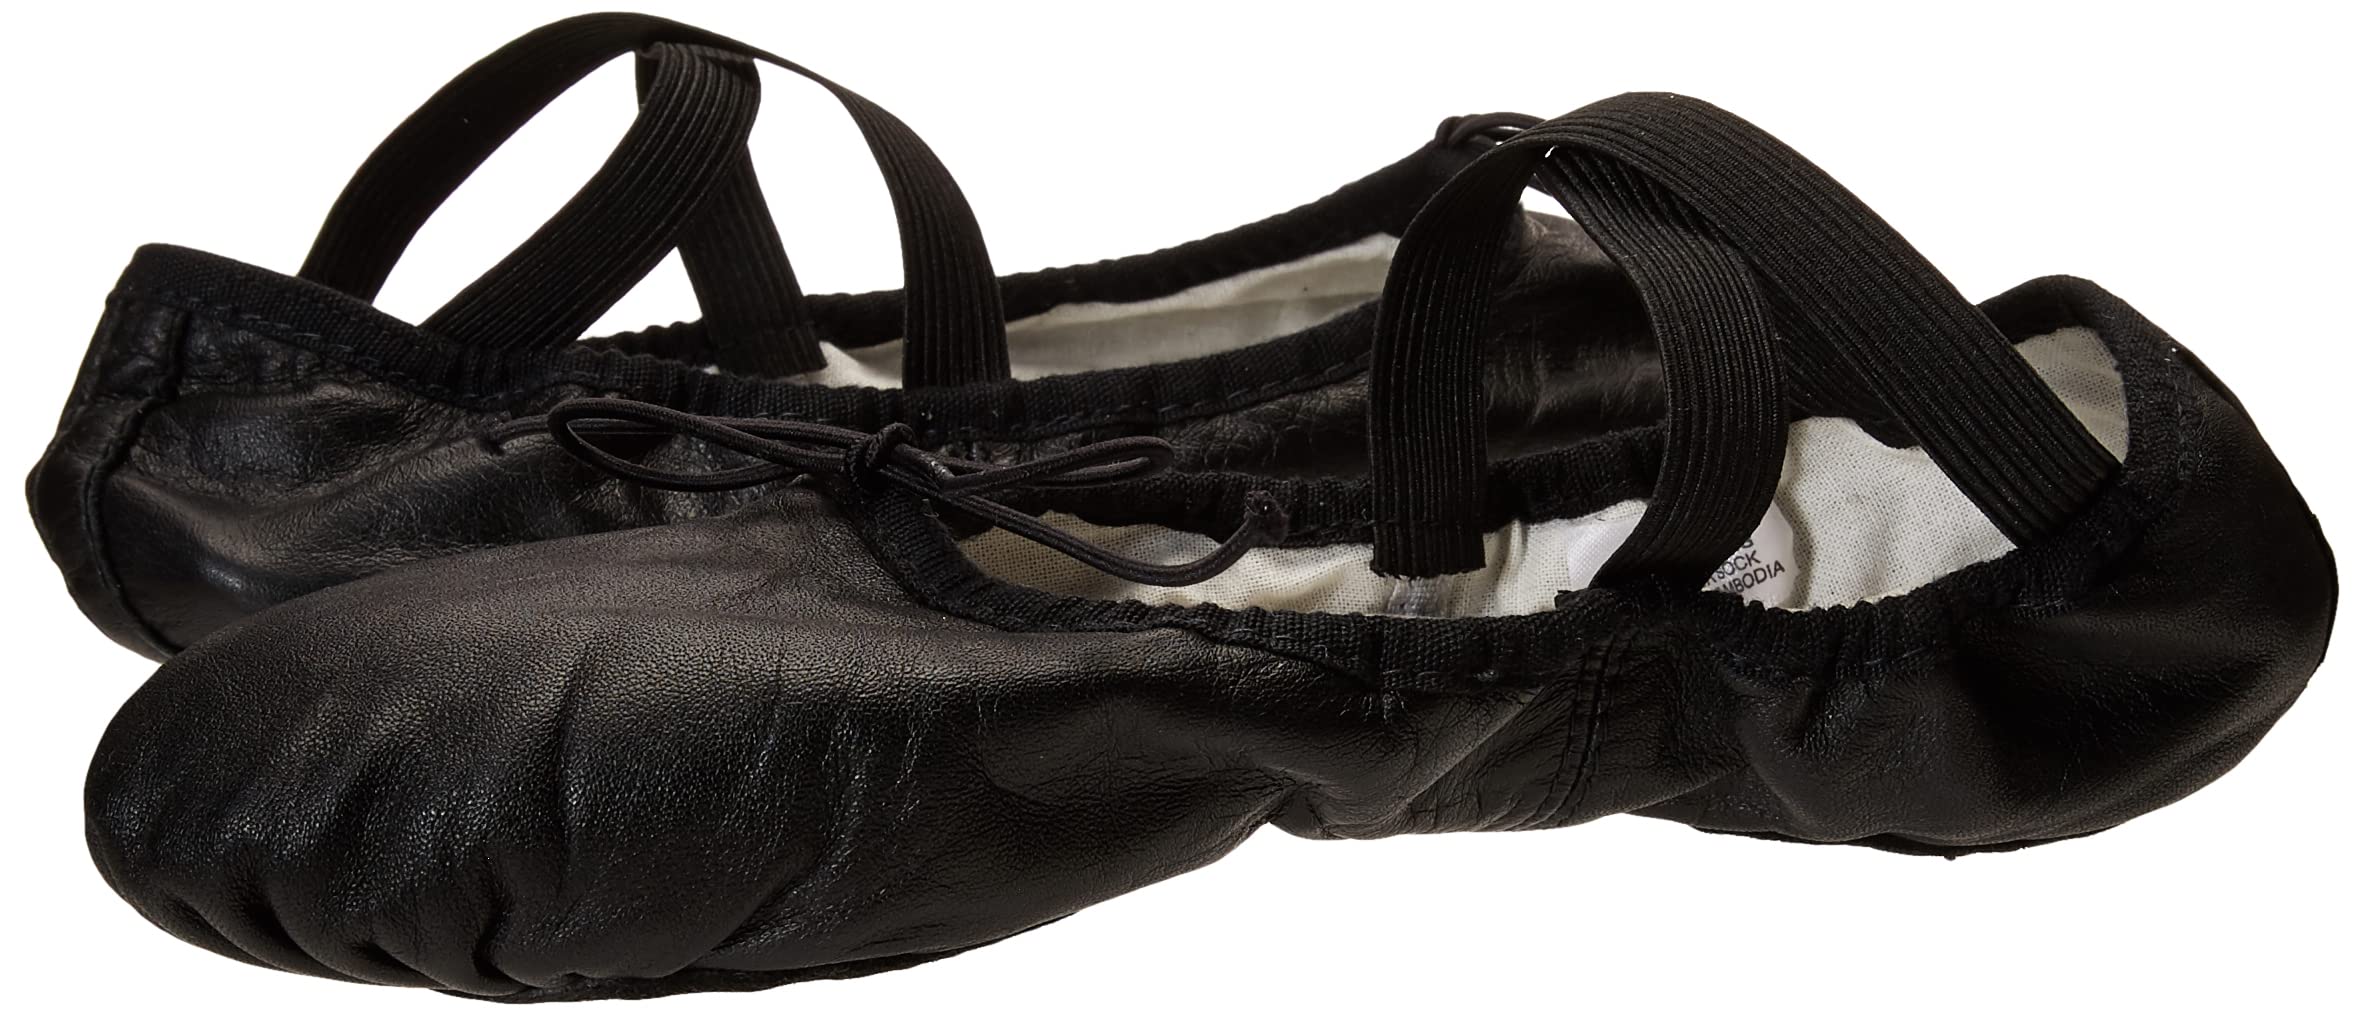 Bloch Dance Women's Prolite II Split Sole Leather Ballet Slipper/Shoe